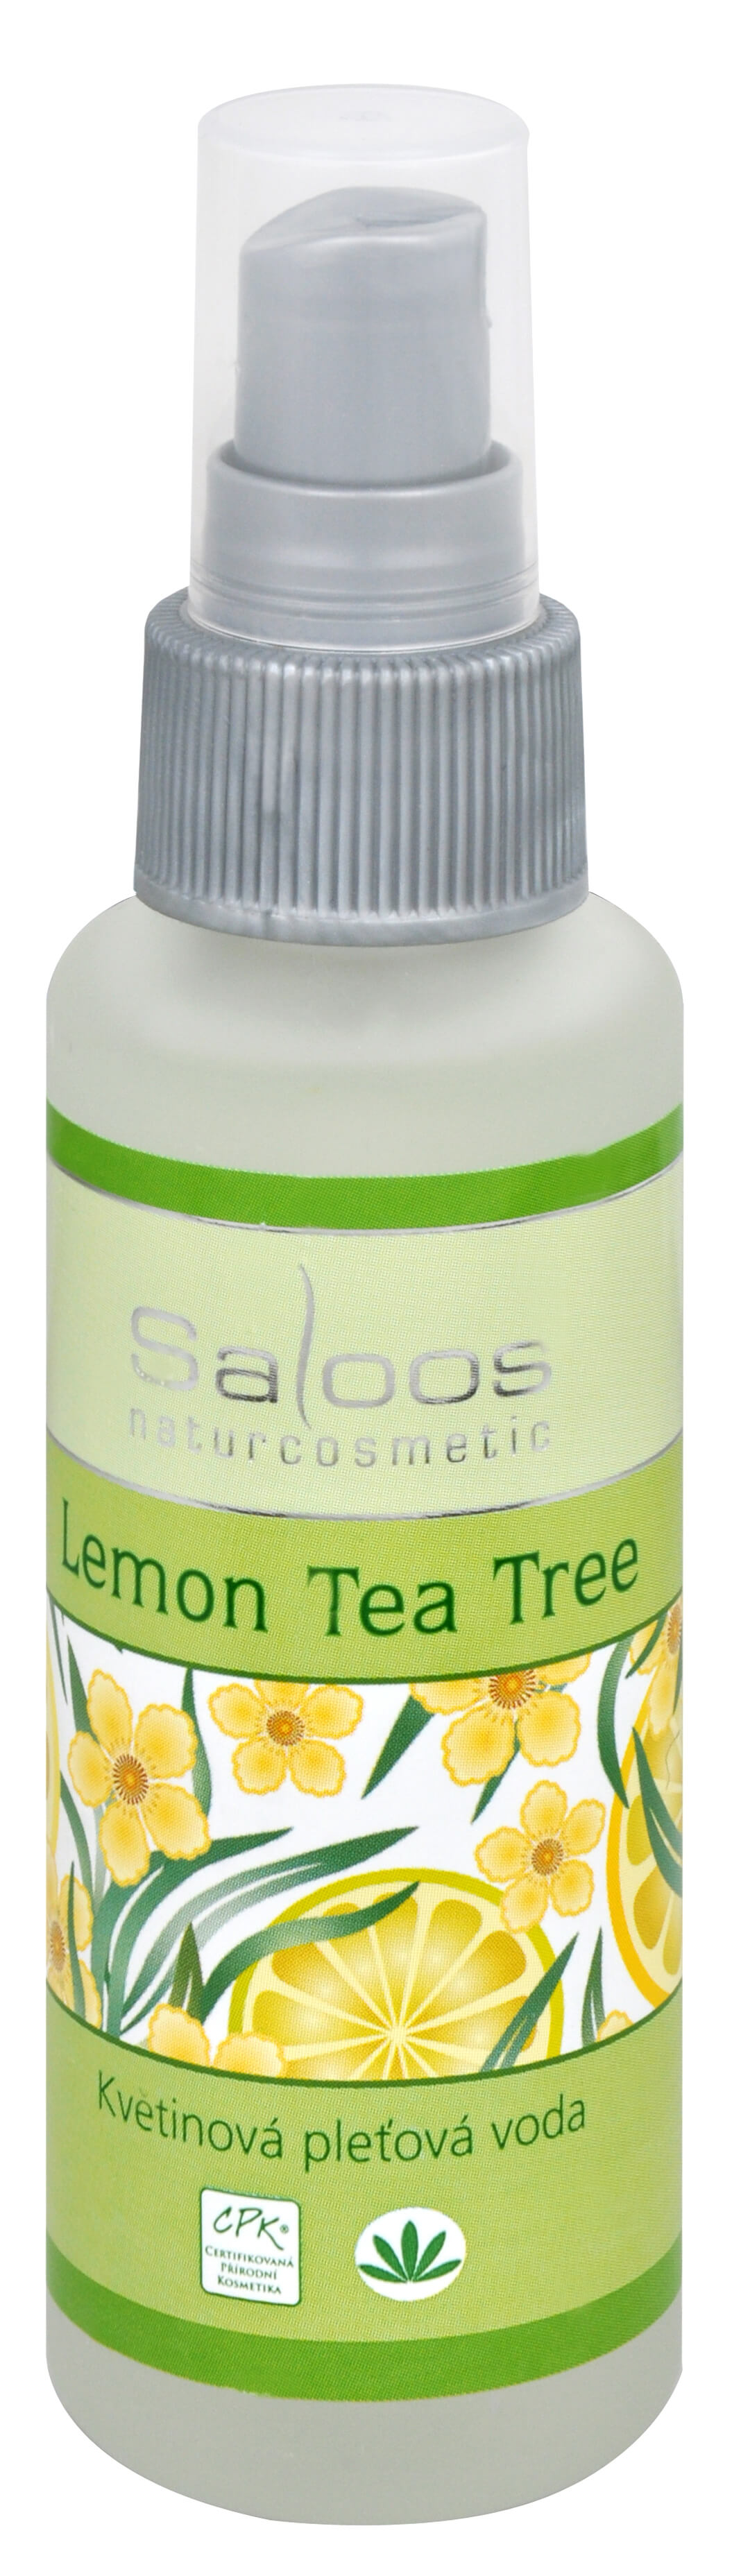 Zobrazit detail výrobku Saloos Květinová pleťová voda - Lemon tea tree 50 ml